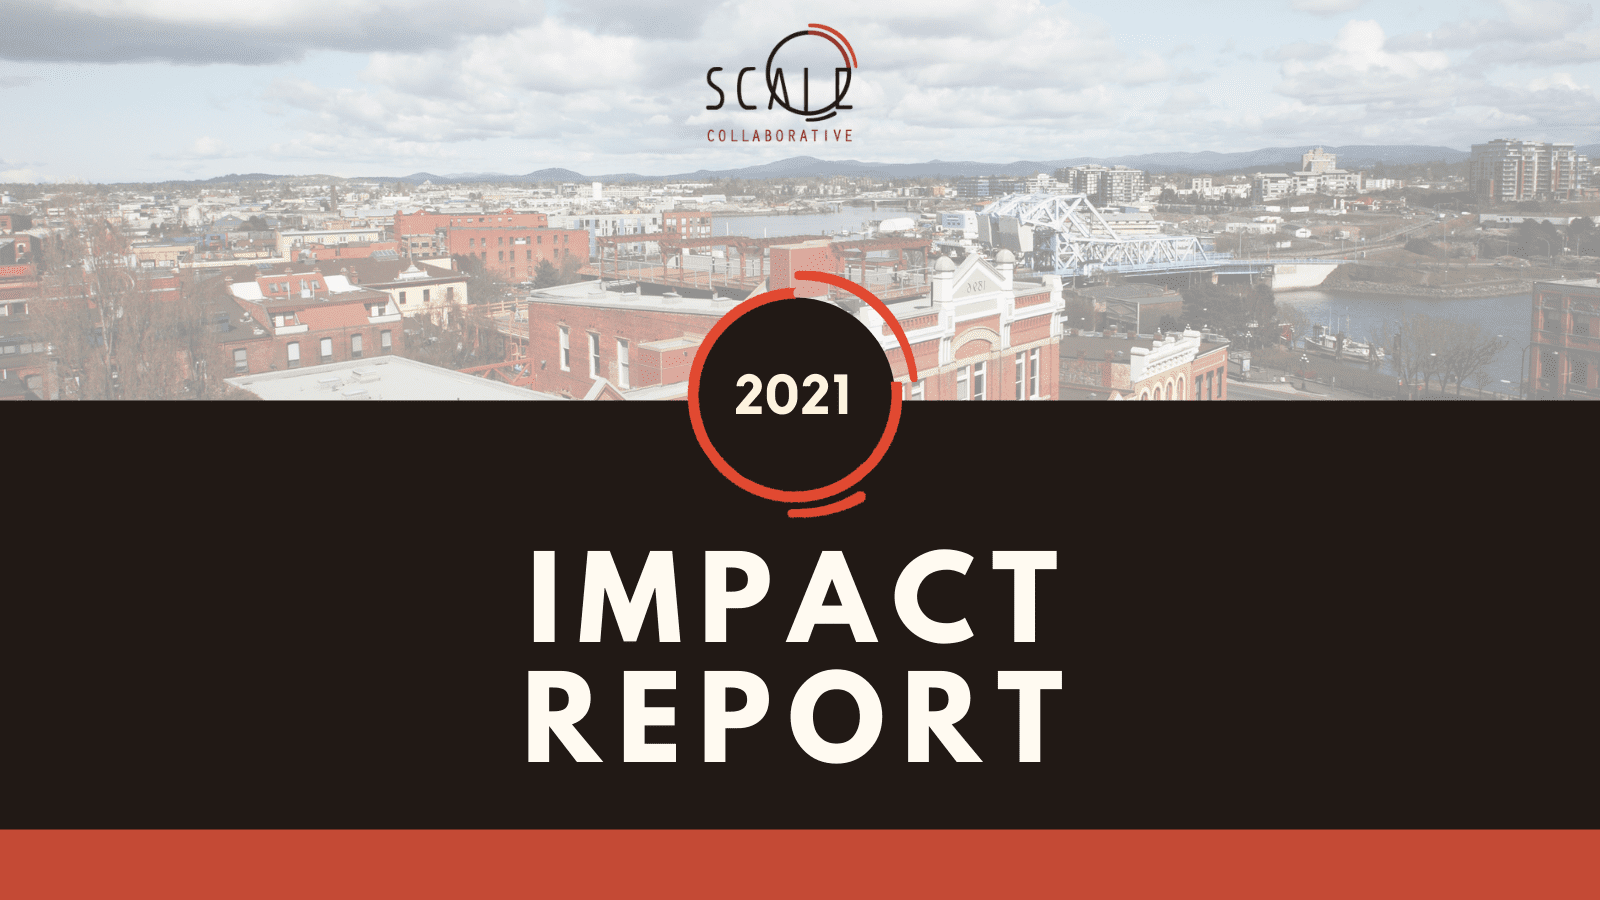 Scale Collaborative Impact Report 2021